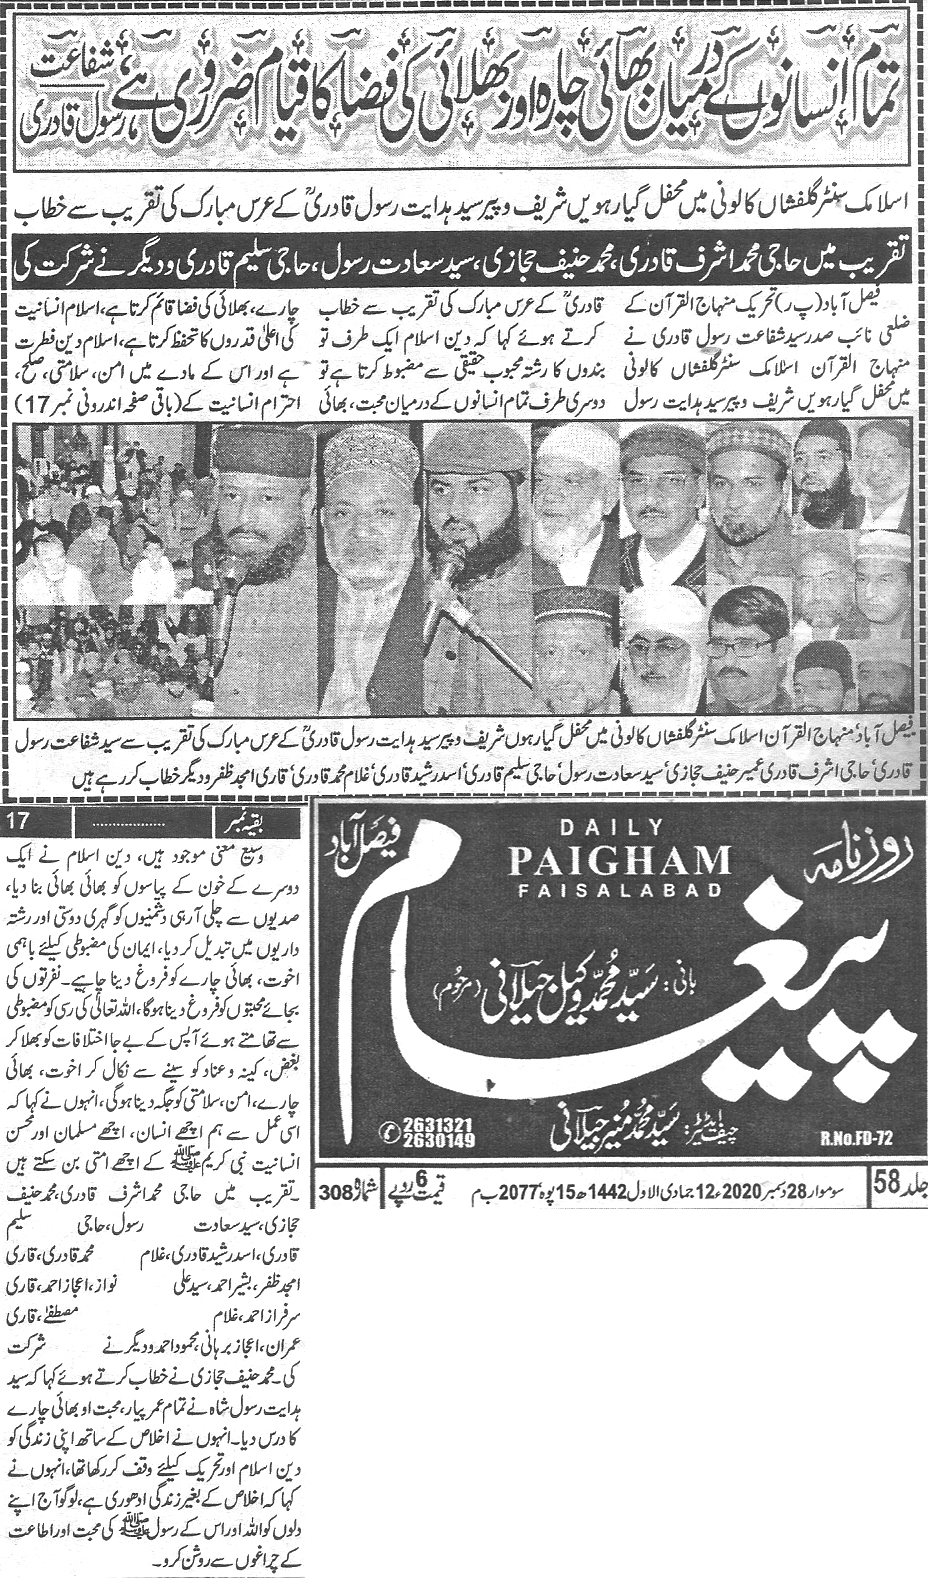 Minhaj-ul-Quran  Print Media Coverage Daily Paigham Back page 